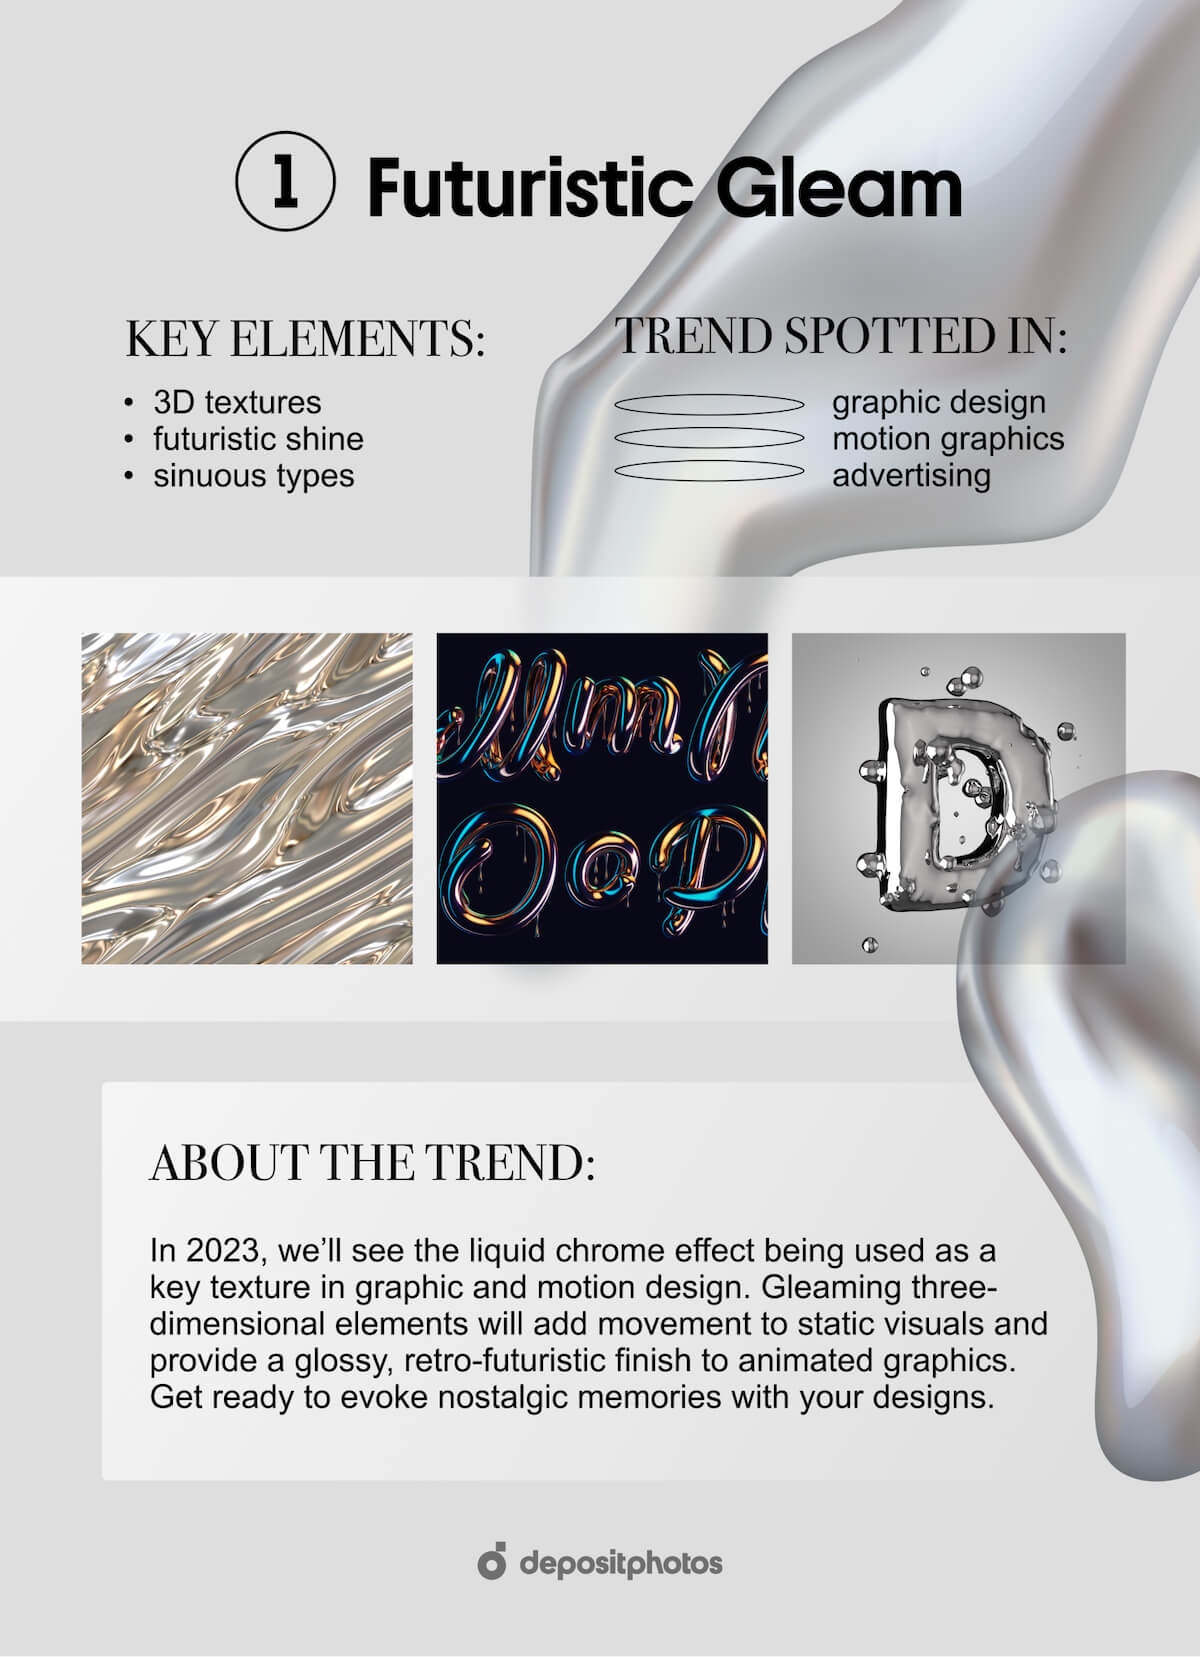 Futuristic Gleam Graphic Design Trends in 2023